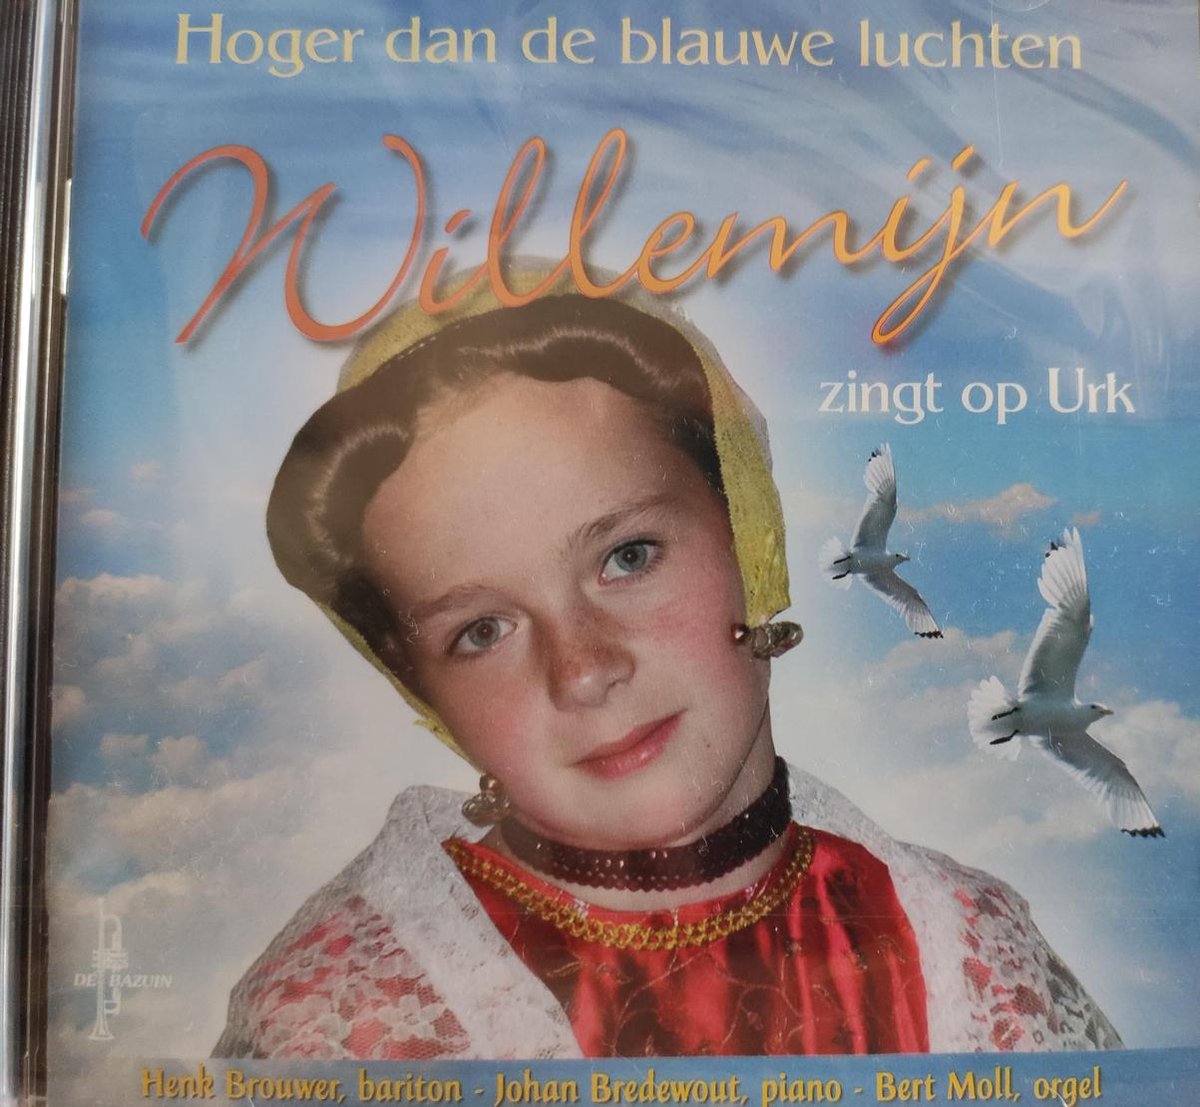 Hoger dan de blauwe luchten - Willemijn zingt op Urk (de cd is vervallen maar zit wel in de dvdbox) - Willemijn